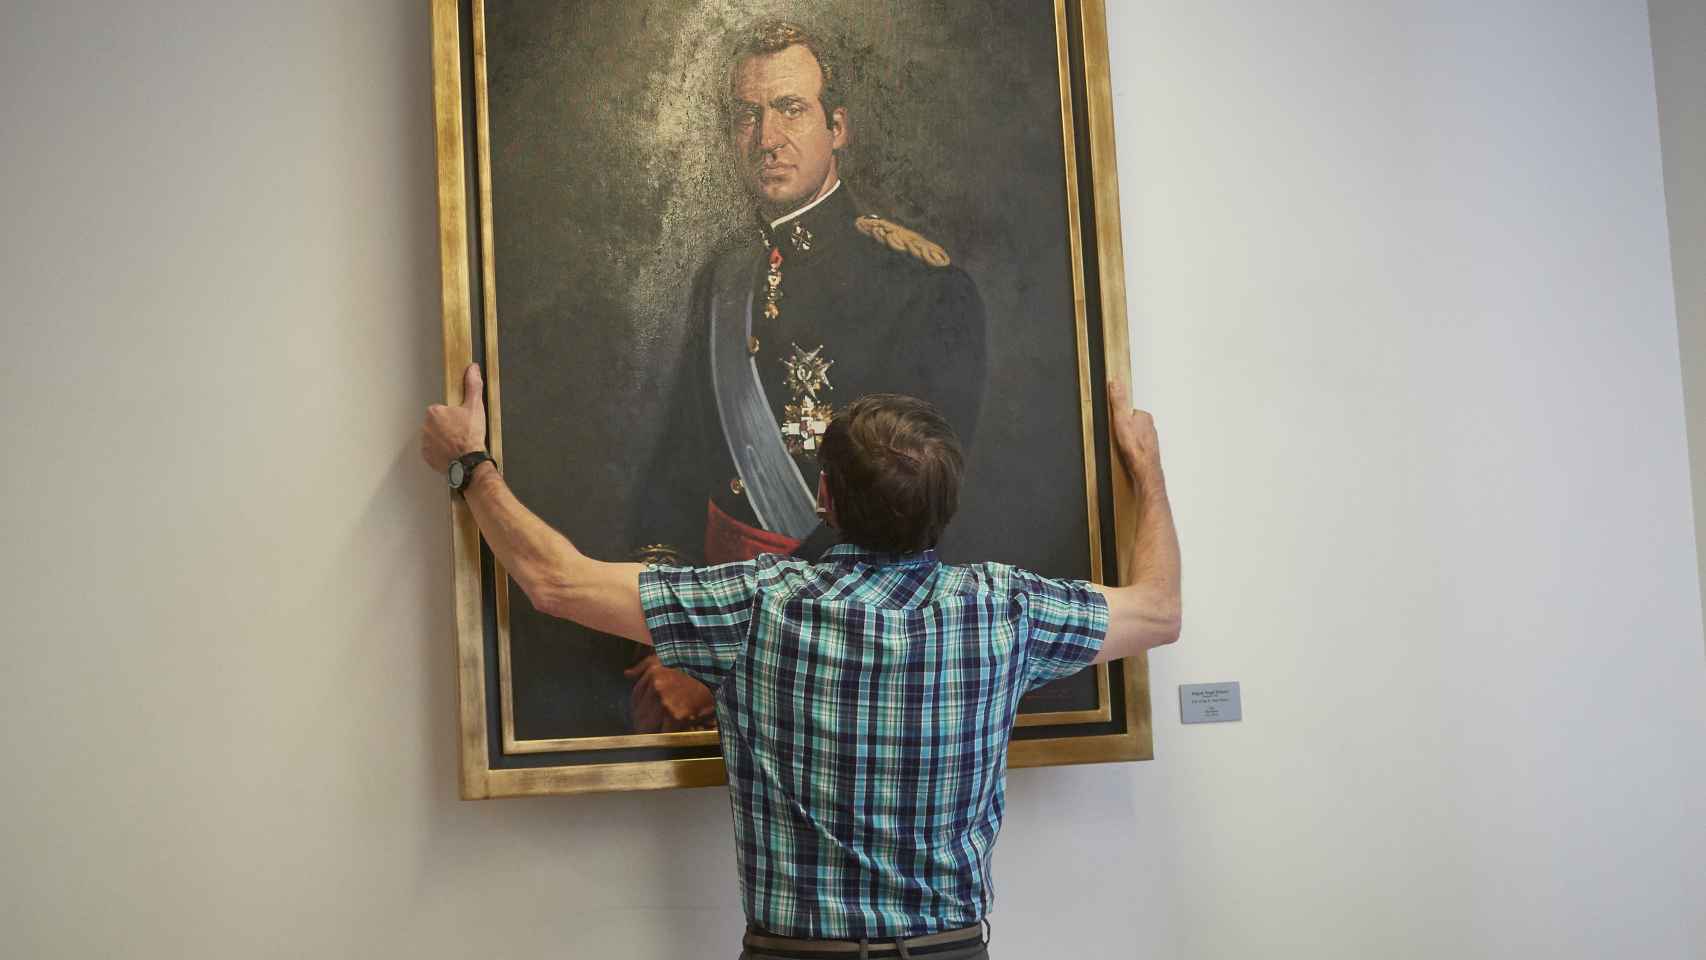 Un operario retira el retrato del rey emérito Juan Carlos I de la Sala de Gobierno del Legislativo foral del Parlamento de Navarra.